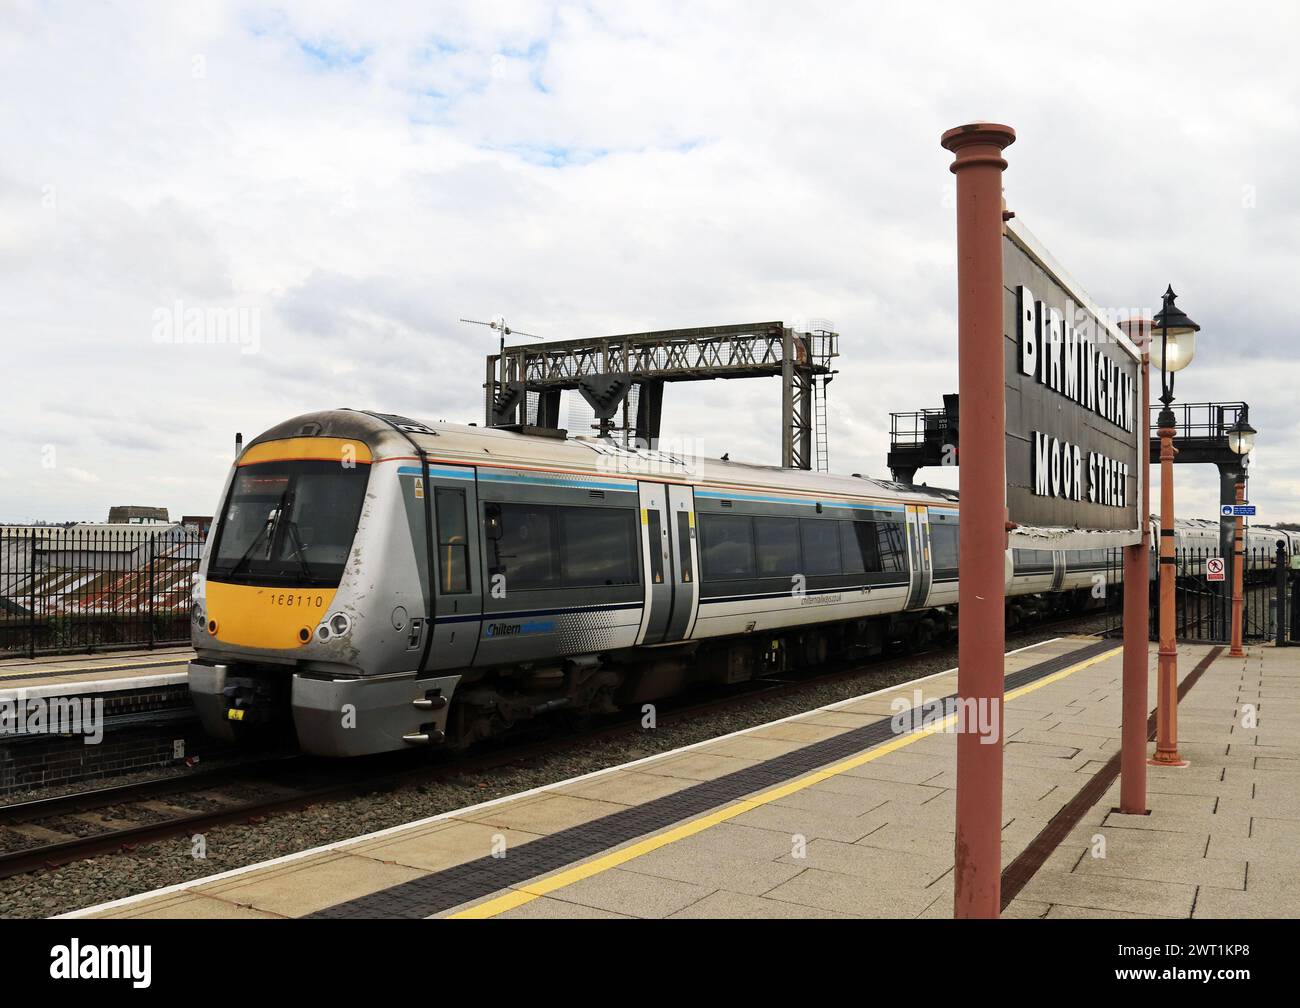 Un train Chiltern passant devant un vieux panneau en bois part de la gare de Birmingham Moor Street formant un service à Londres Marylebone. Banque D'Images